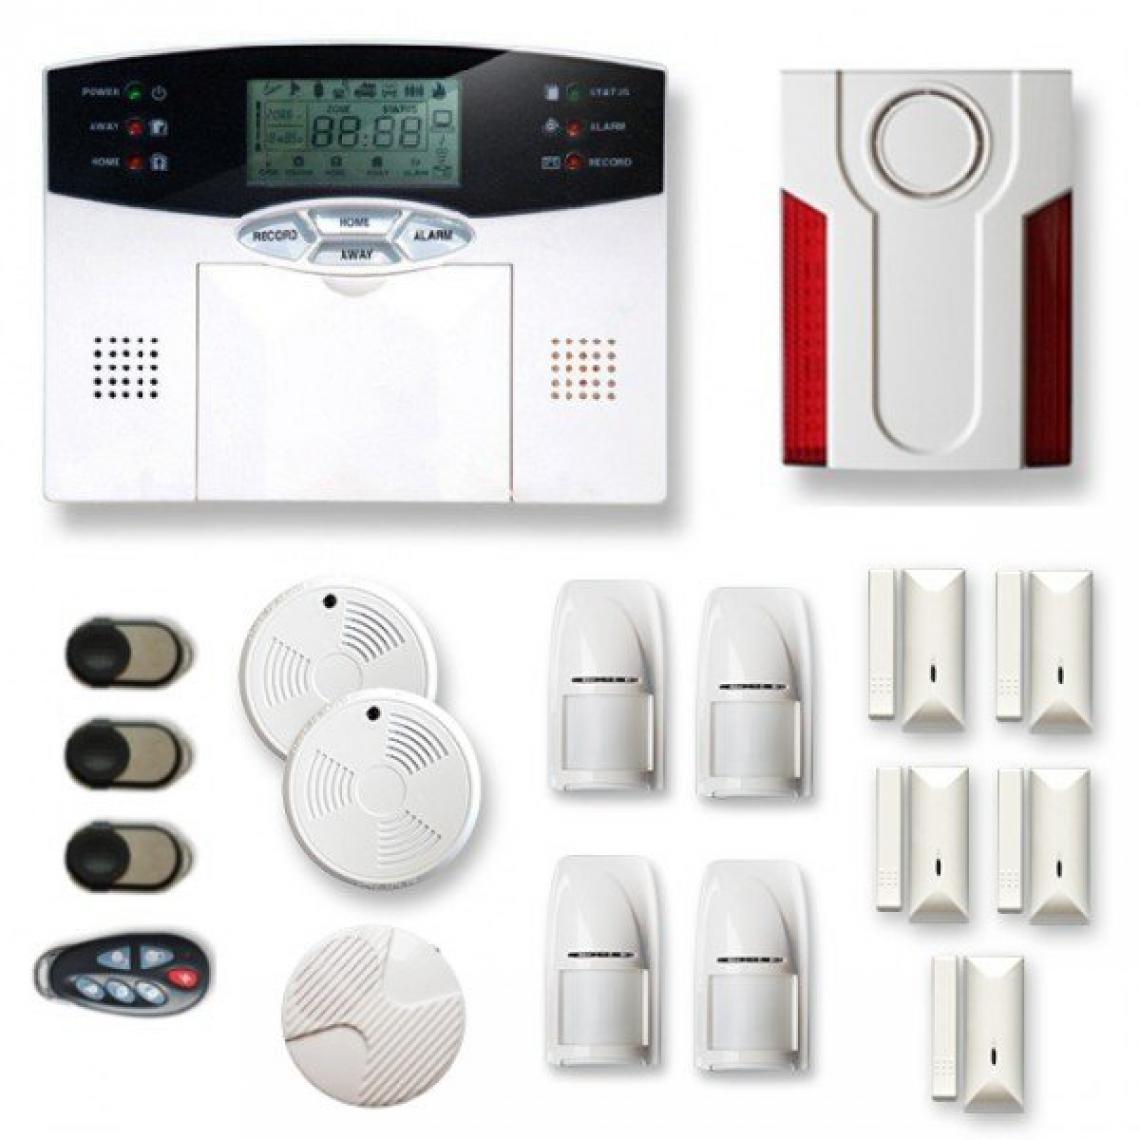 Tike Securite - Alarme maison sans fil MN22 Compatible Box internet - Alarme connectée